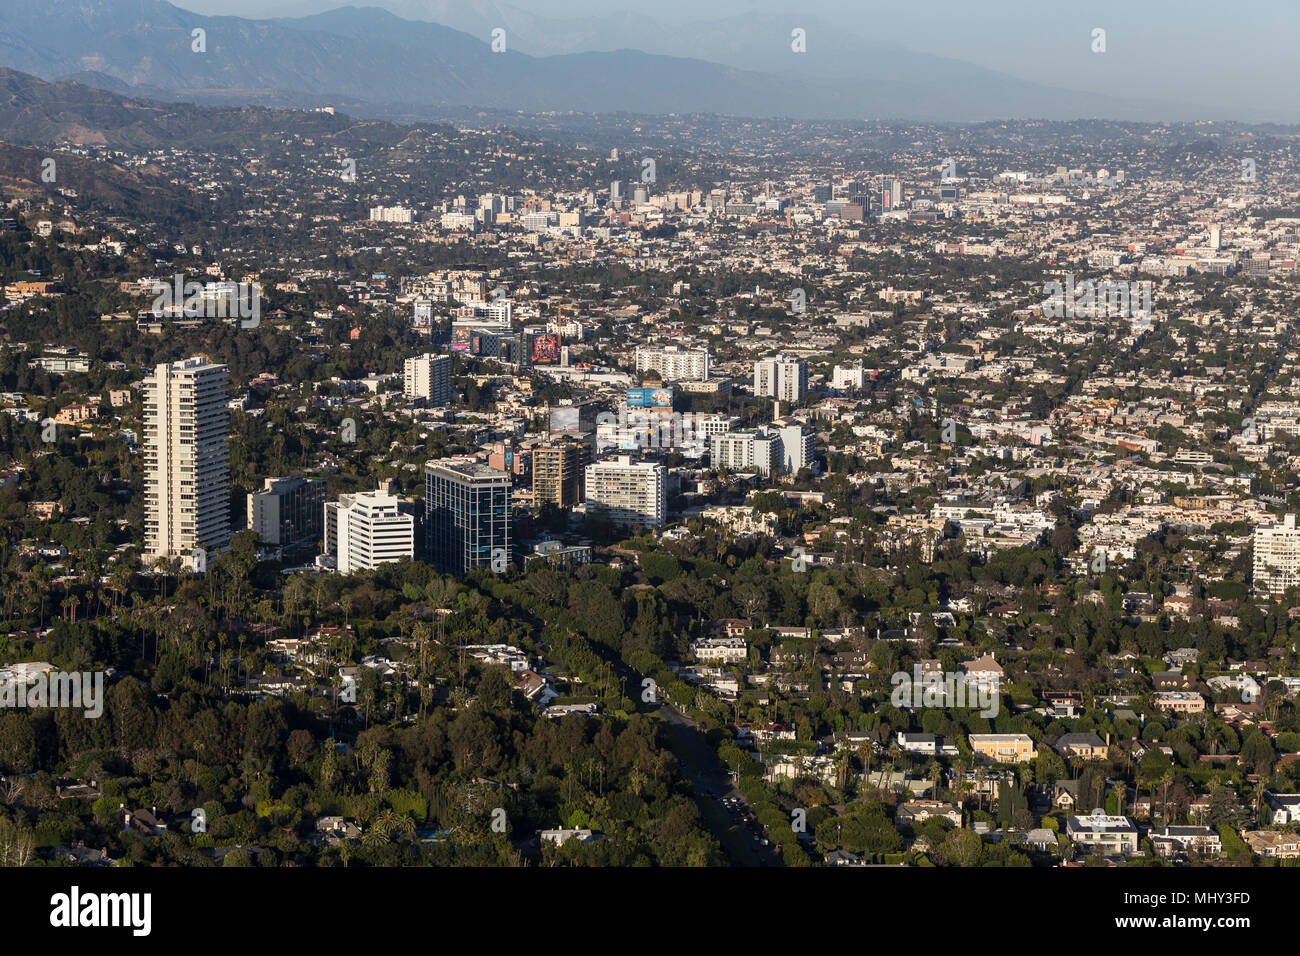 West Hollywood, Californie, USA - 18 Avril 2018 : Vue aérienne de tours et immeubles le long du Sunset Strip à Los Angeles dans l'arrière-plan. Banque D'Images